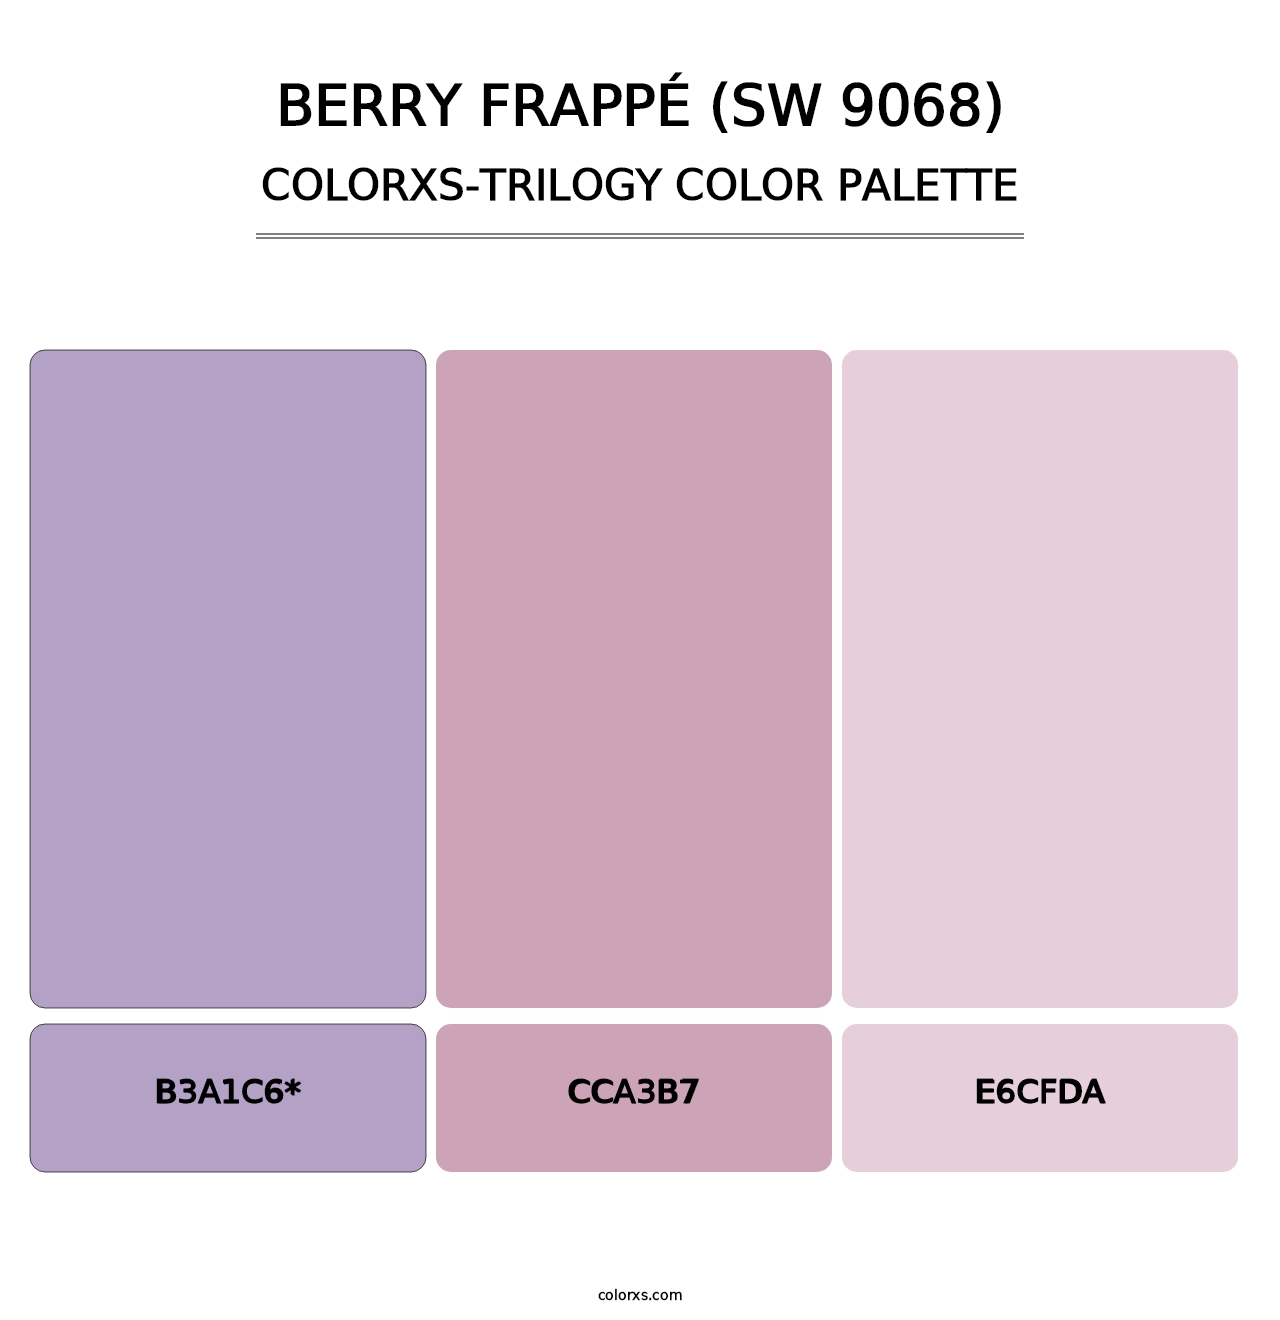 Berry Frappé (SW 9068) - Colorxs Trilogy Palette